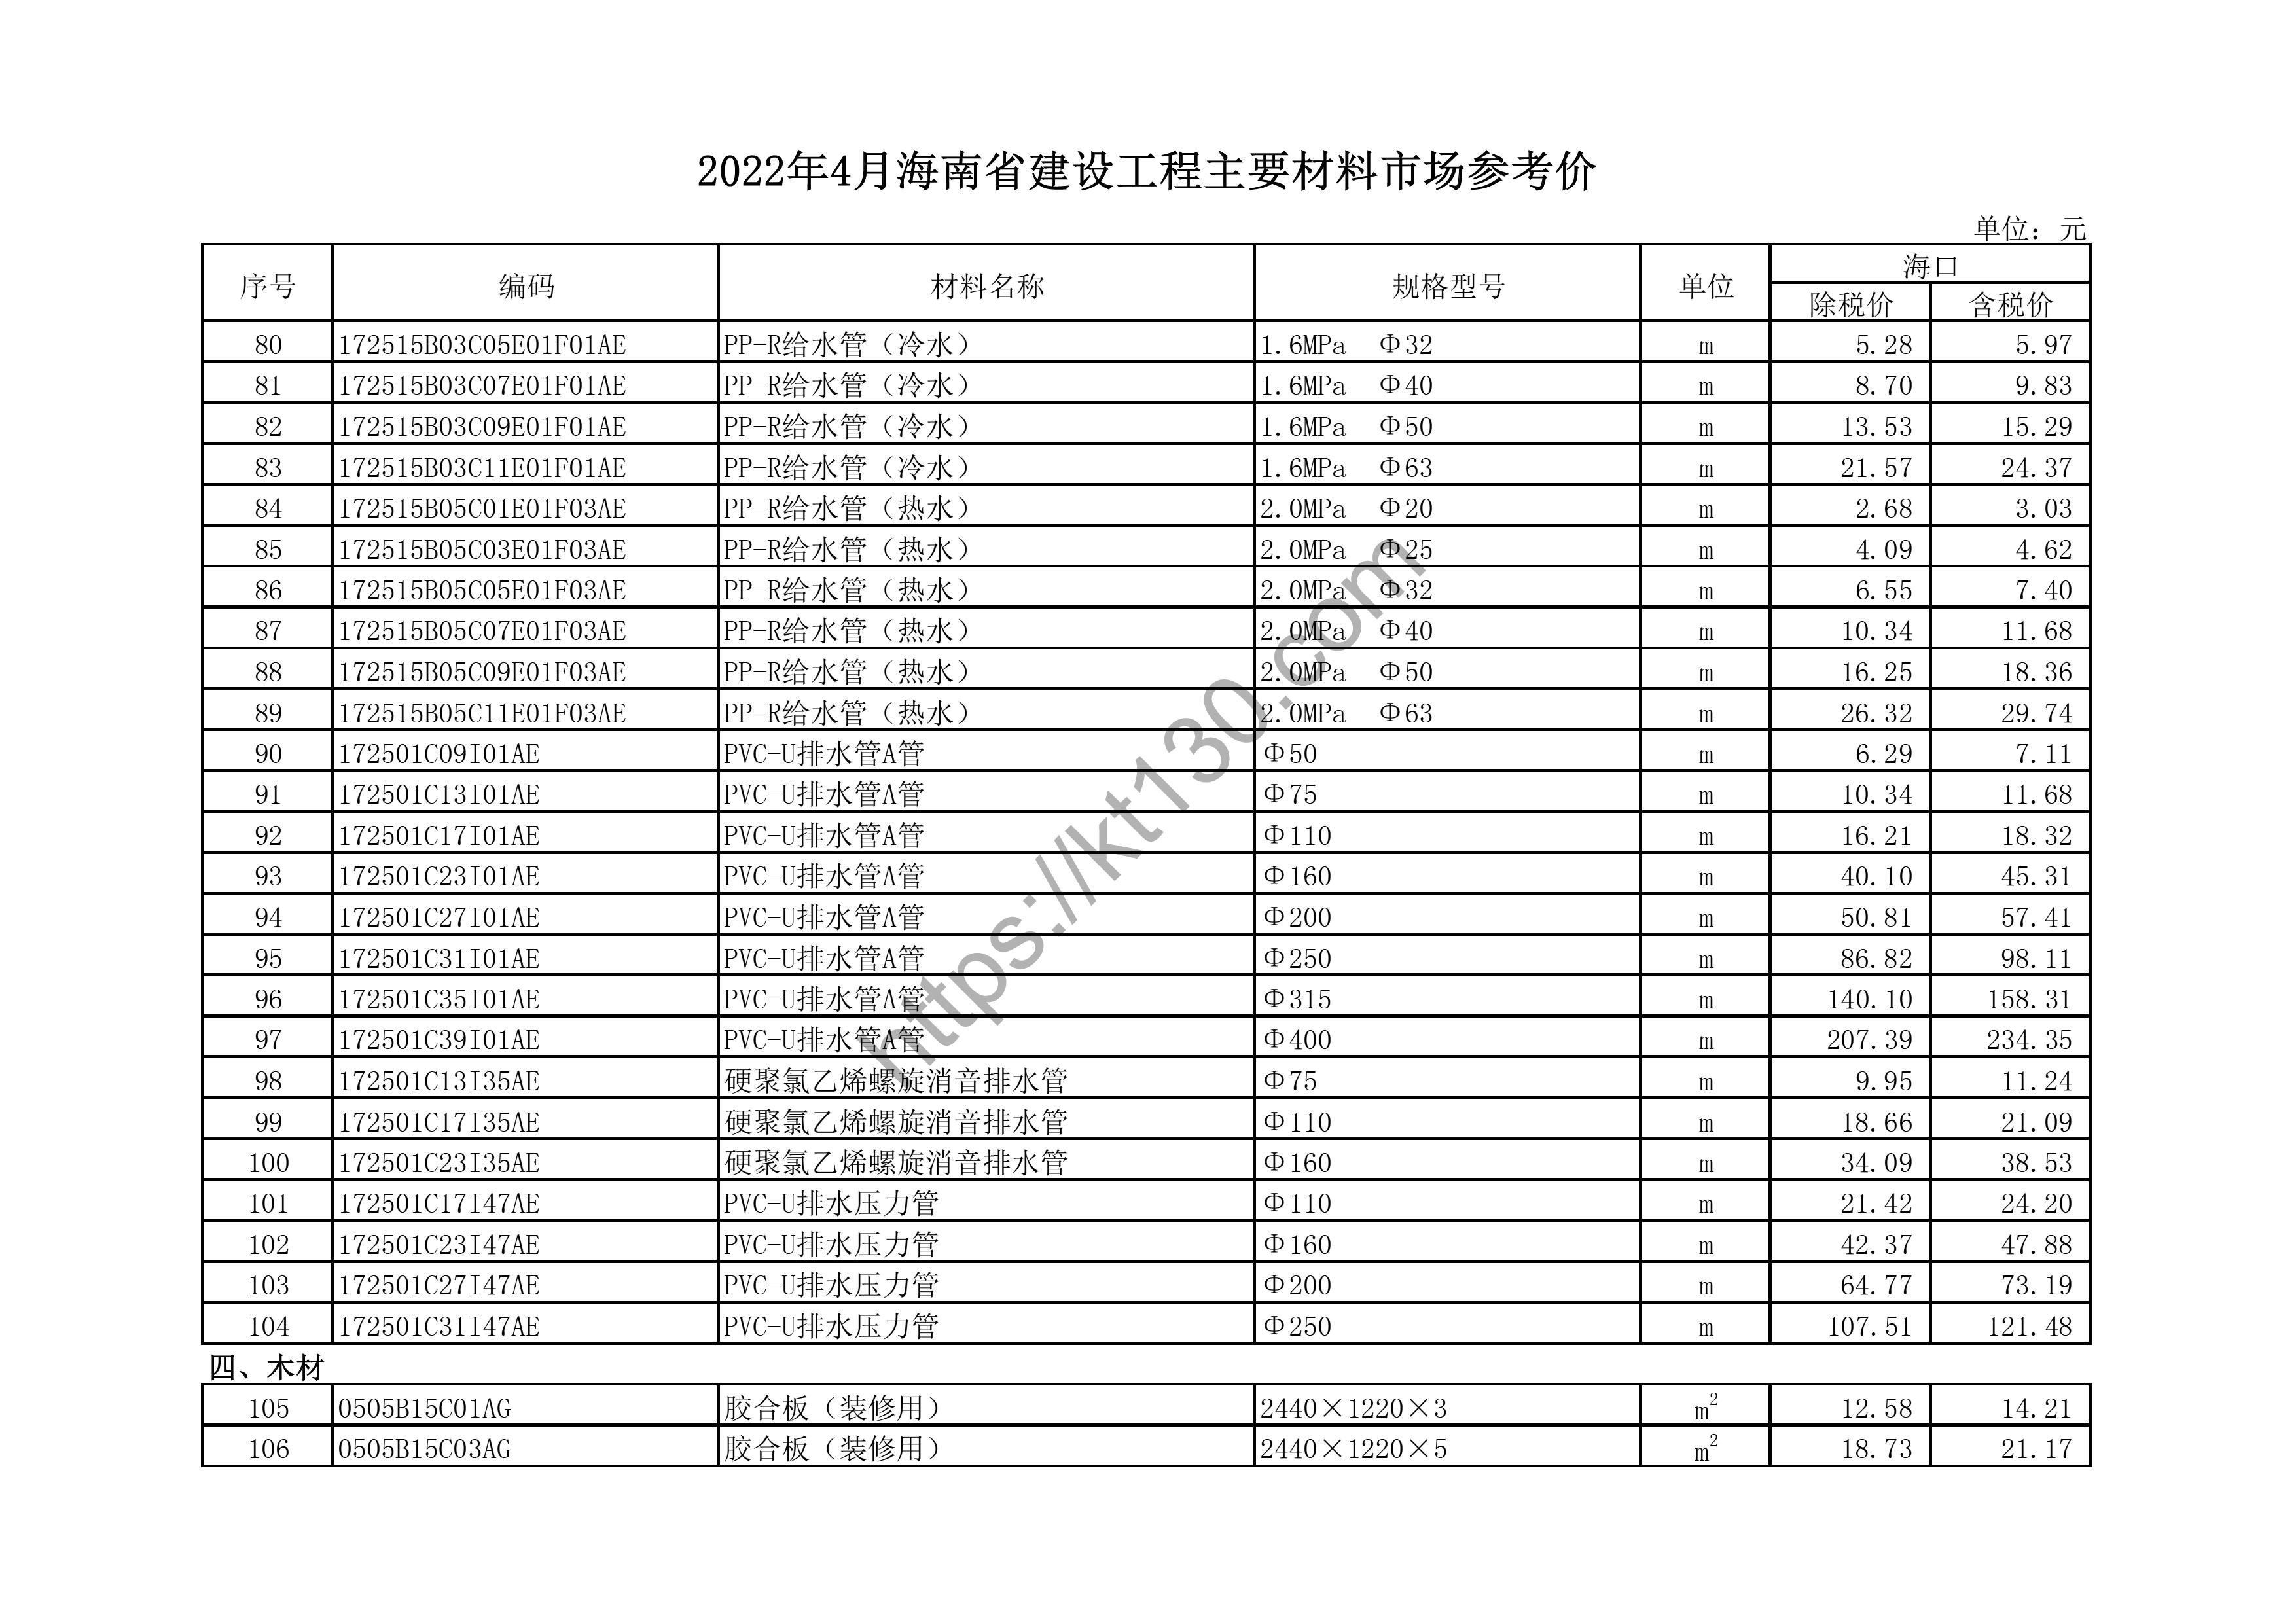 海南省2022年4月建筑材料价_木、竹材料及制品_44106